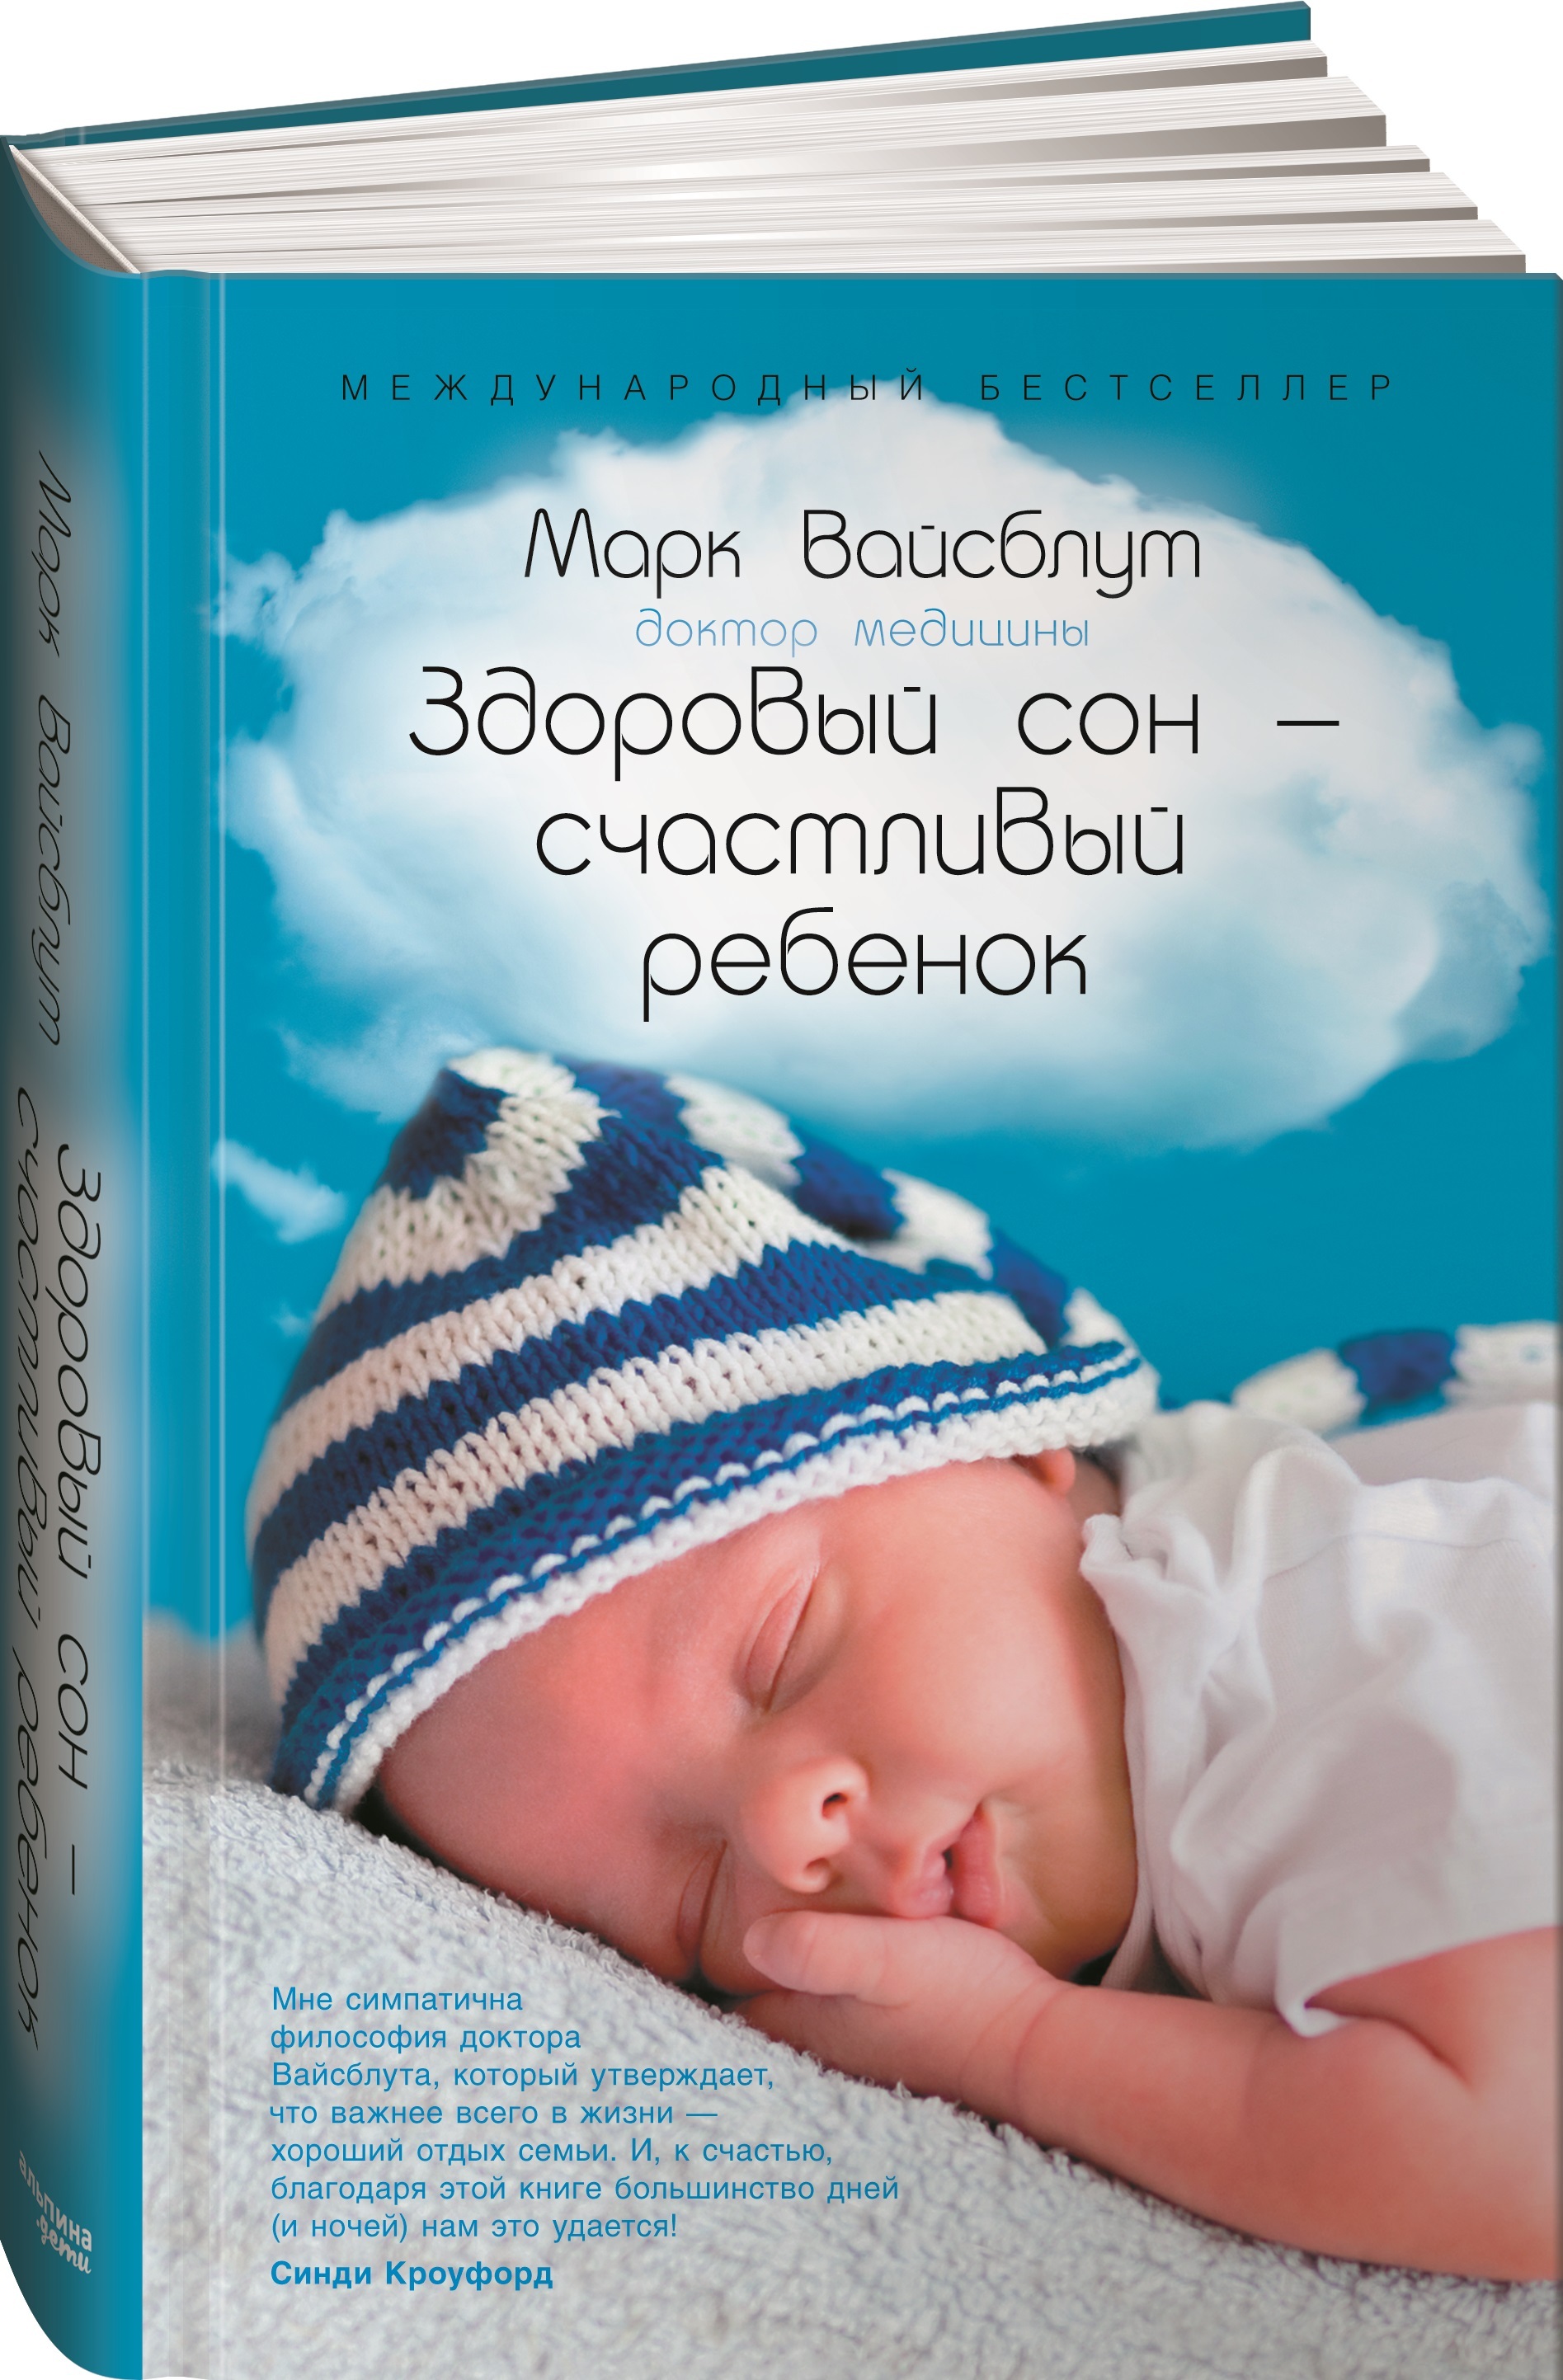 Спи малыш книга. Вайсблут здоровый сон счастливый ребенок. Книга про детский сон. Книги про сон для детей.